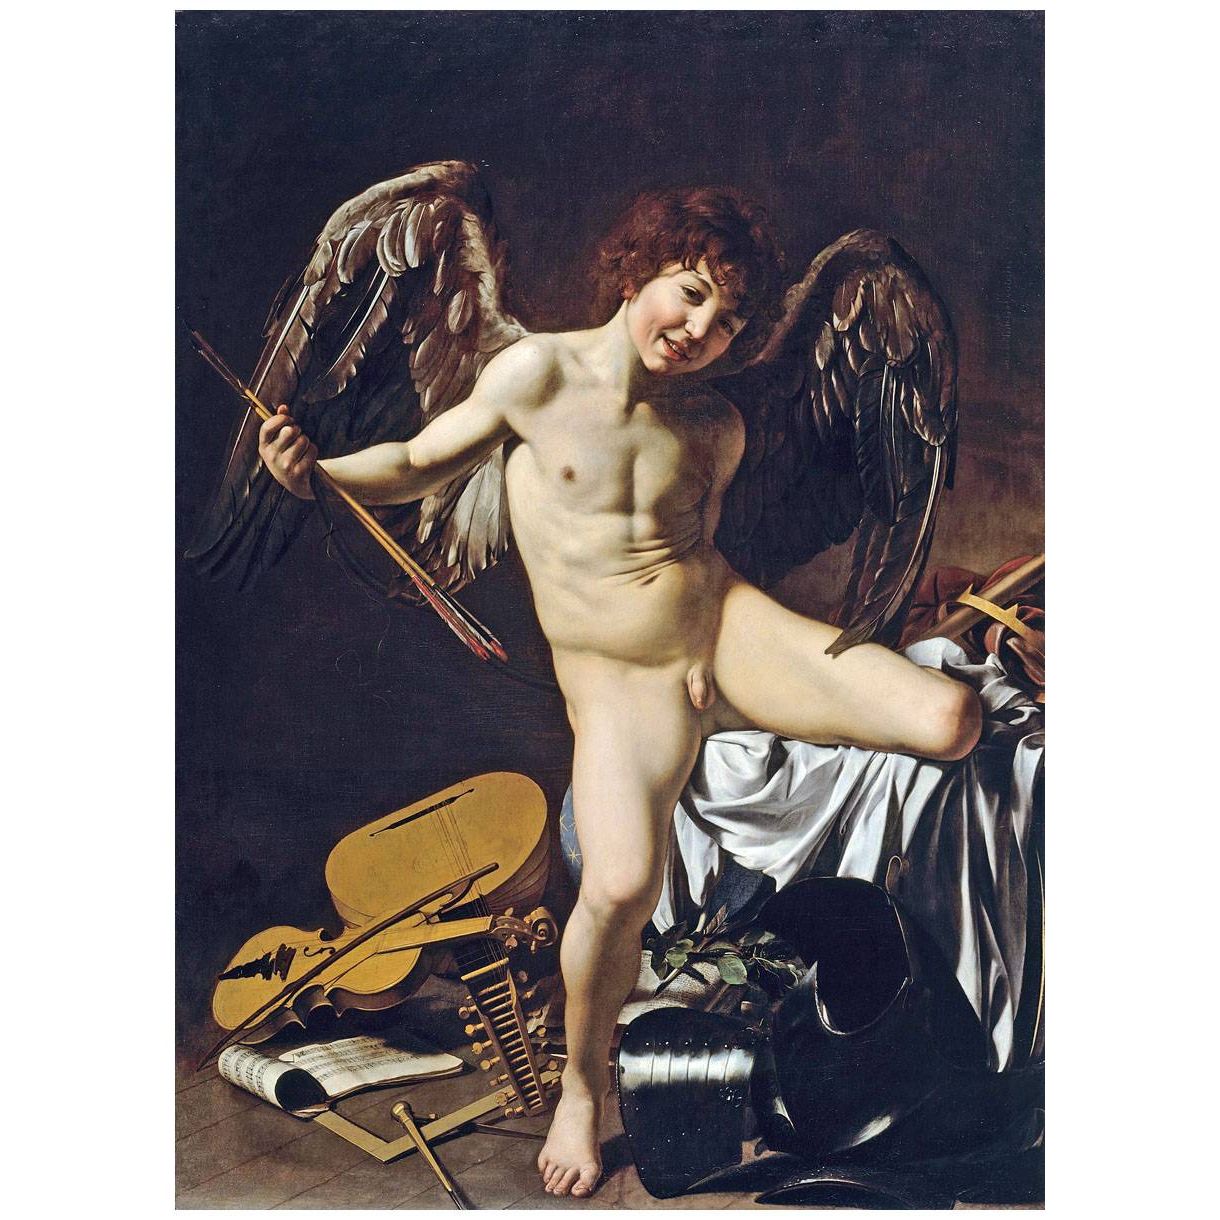 Caravaggio. Amor vincit omnia. 1601. Gemaldegalerie Berlin